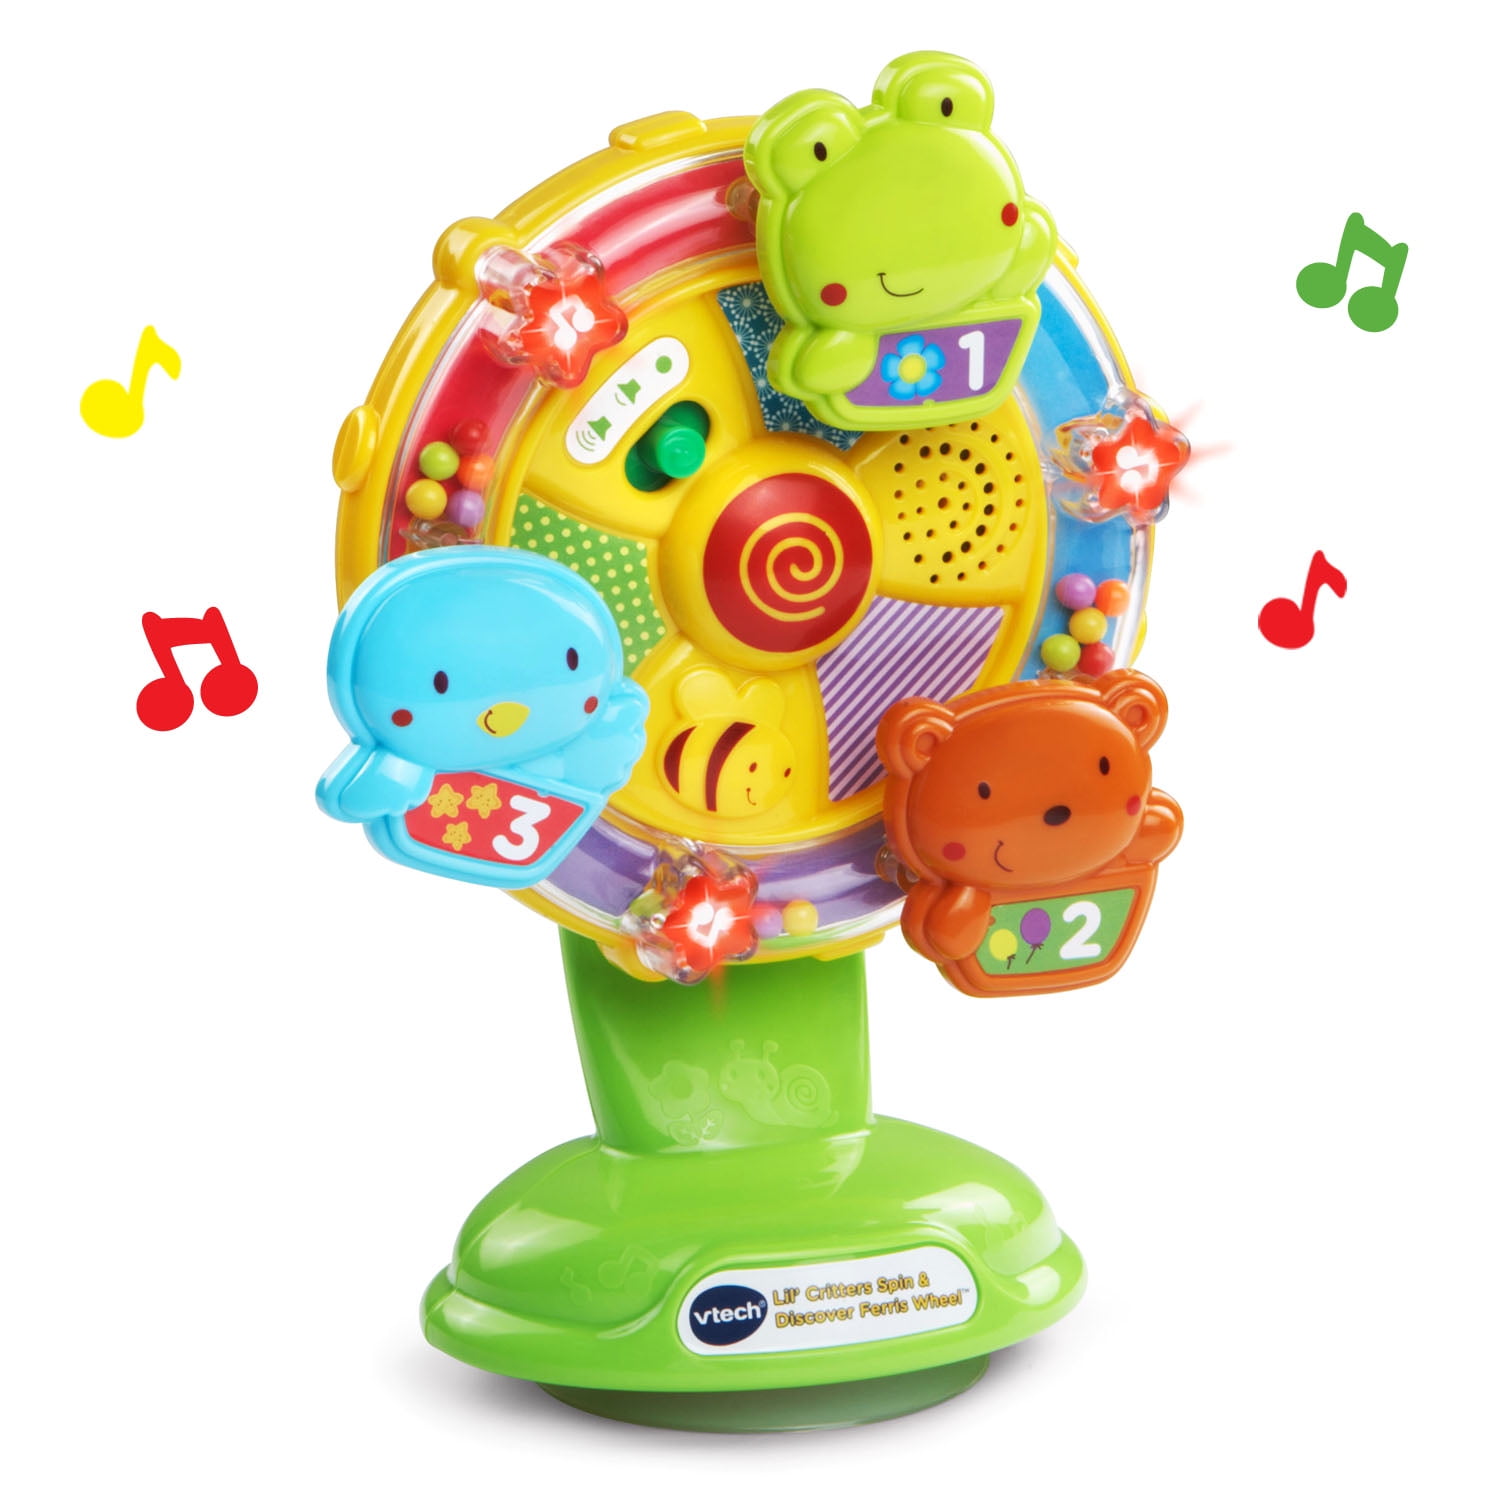 vtech baby little friendlies sing along spinning wheel